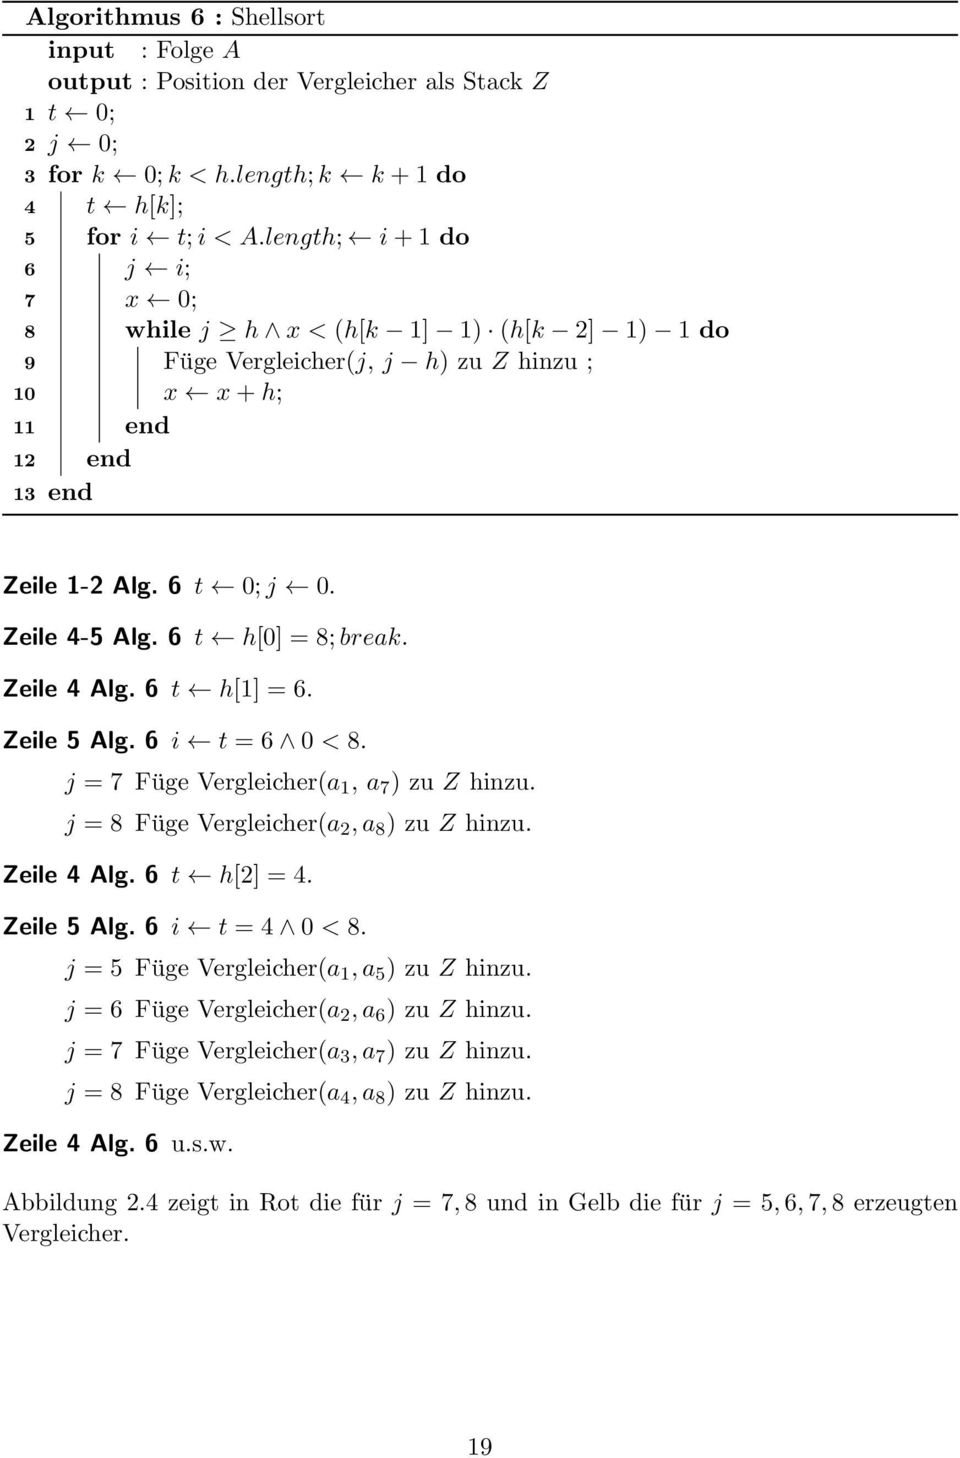 6 t h[0] = 8; break. Zeile 4 Alg. 6 t h[1] = 6. Zeile 5 Alg. 6 i t = 6 0 < 8. j = 7 Füge Vergleicher(a 1, a 7 ) zu Z hinzu. j = 8 Füge Vergleicher(a 2, a 8 ) zu Z hinzu. Zeile 4 Alg. 6 t h[2] = 4.